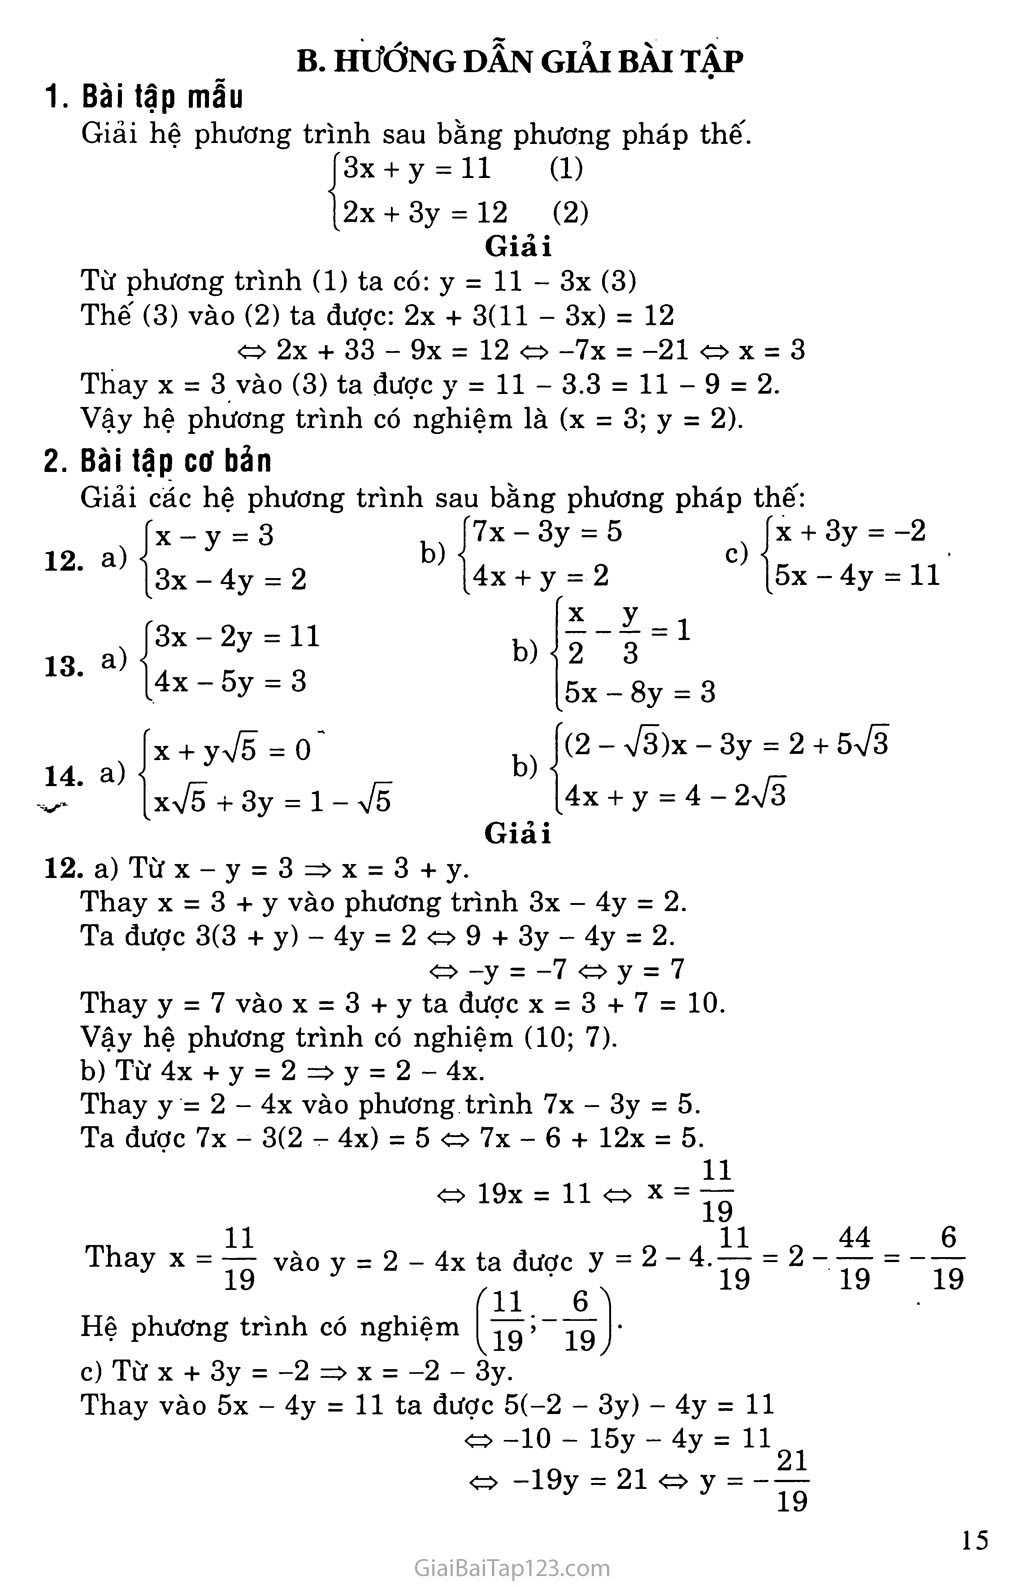 Bài 3. Giải hệ phương trình bằng phương pháp thay thế trang 2